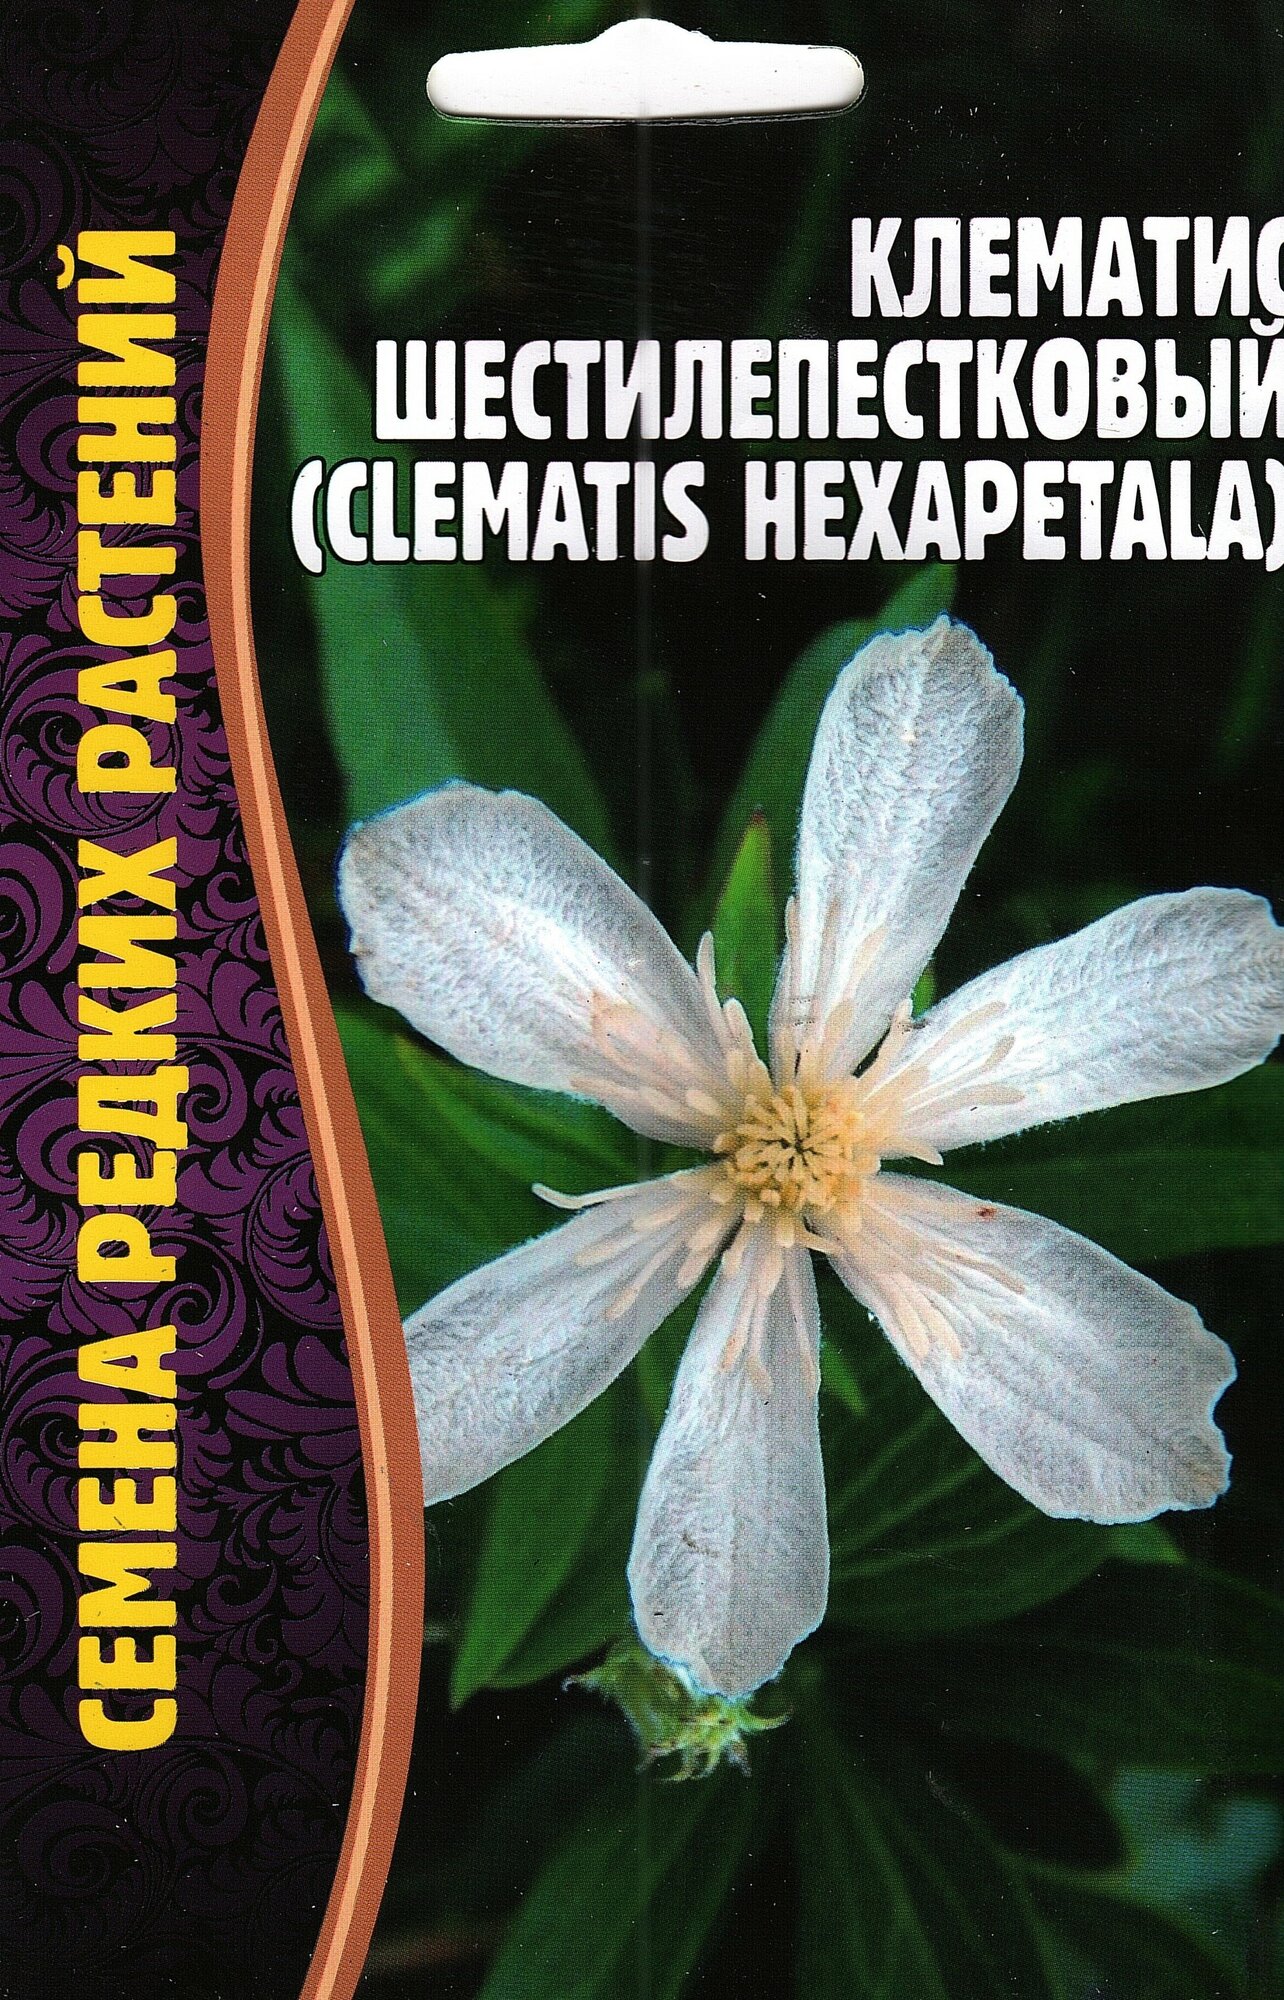 Клематис шестилепестковый Clematis hexapetala семена многолетних цветов ( 1 уп: 10 семян )